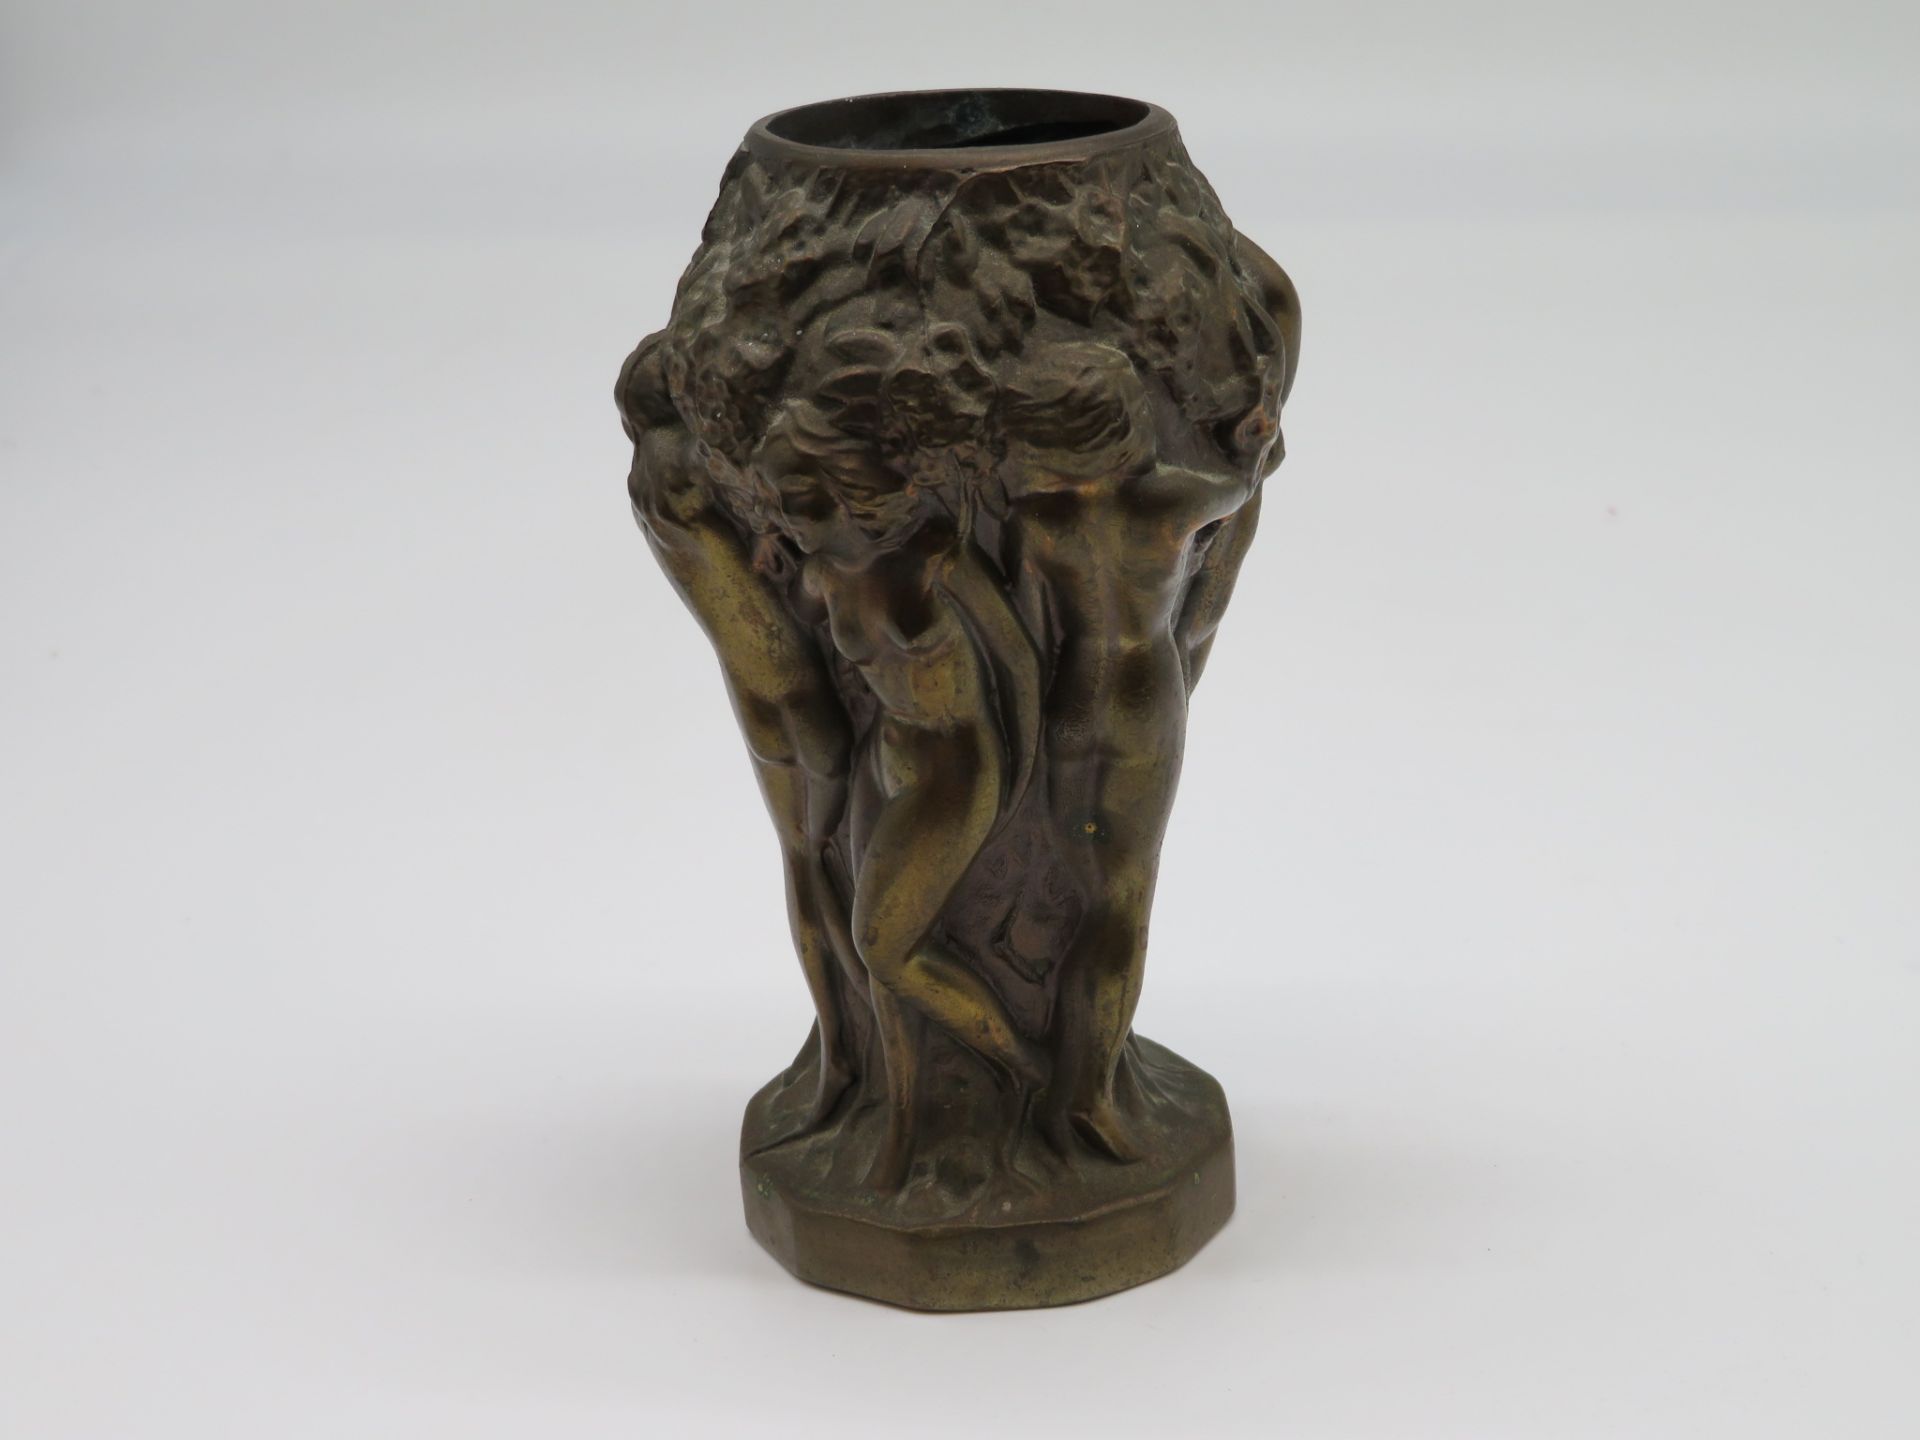 Vase, Jugendstil, um 1900, umlaufendes Reliefdekor weiblicher Akte, sign. "Zero", h 12,5 cm, d 7,5